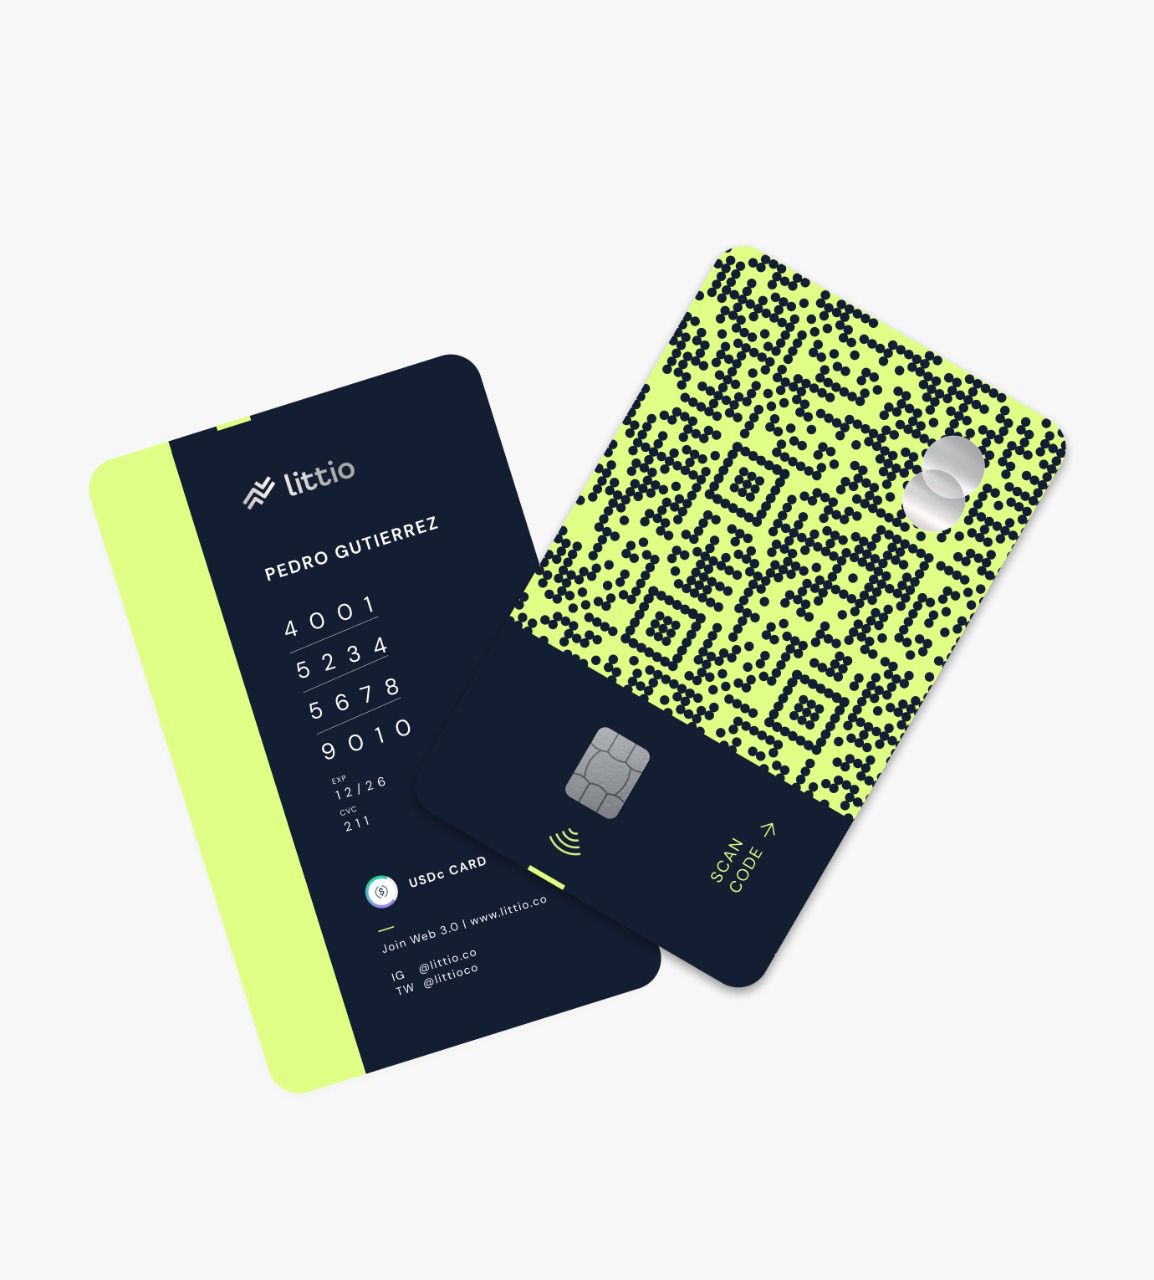 Littio anuncia el lanzamiento de la primera tarjeta débito global que permitirá gastar en dólares digitales en todo el mundo